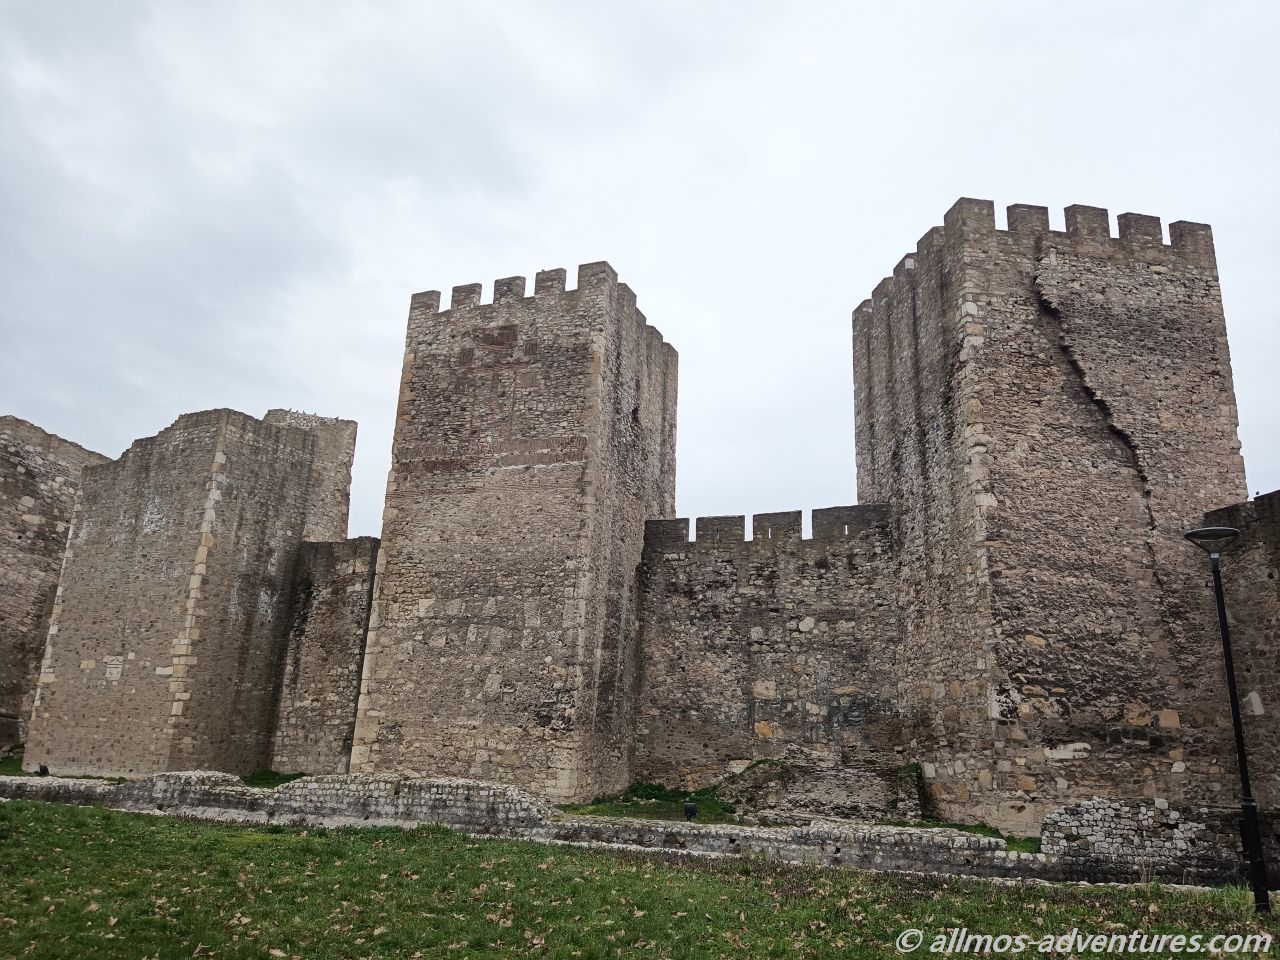 Festung von Smederevo